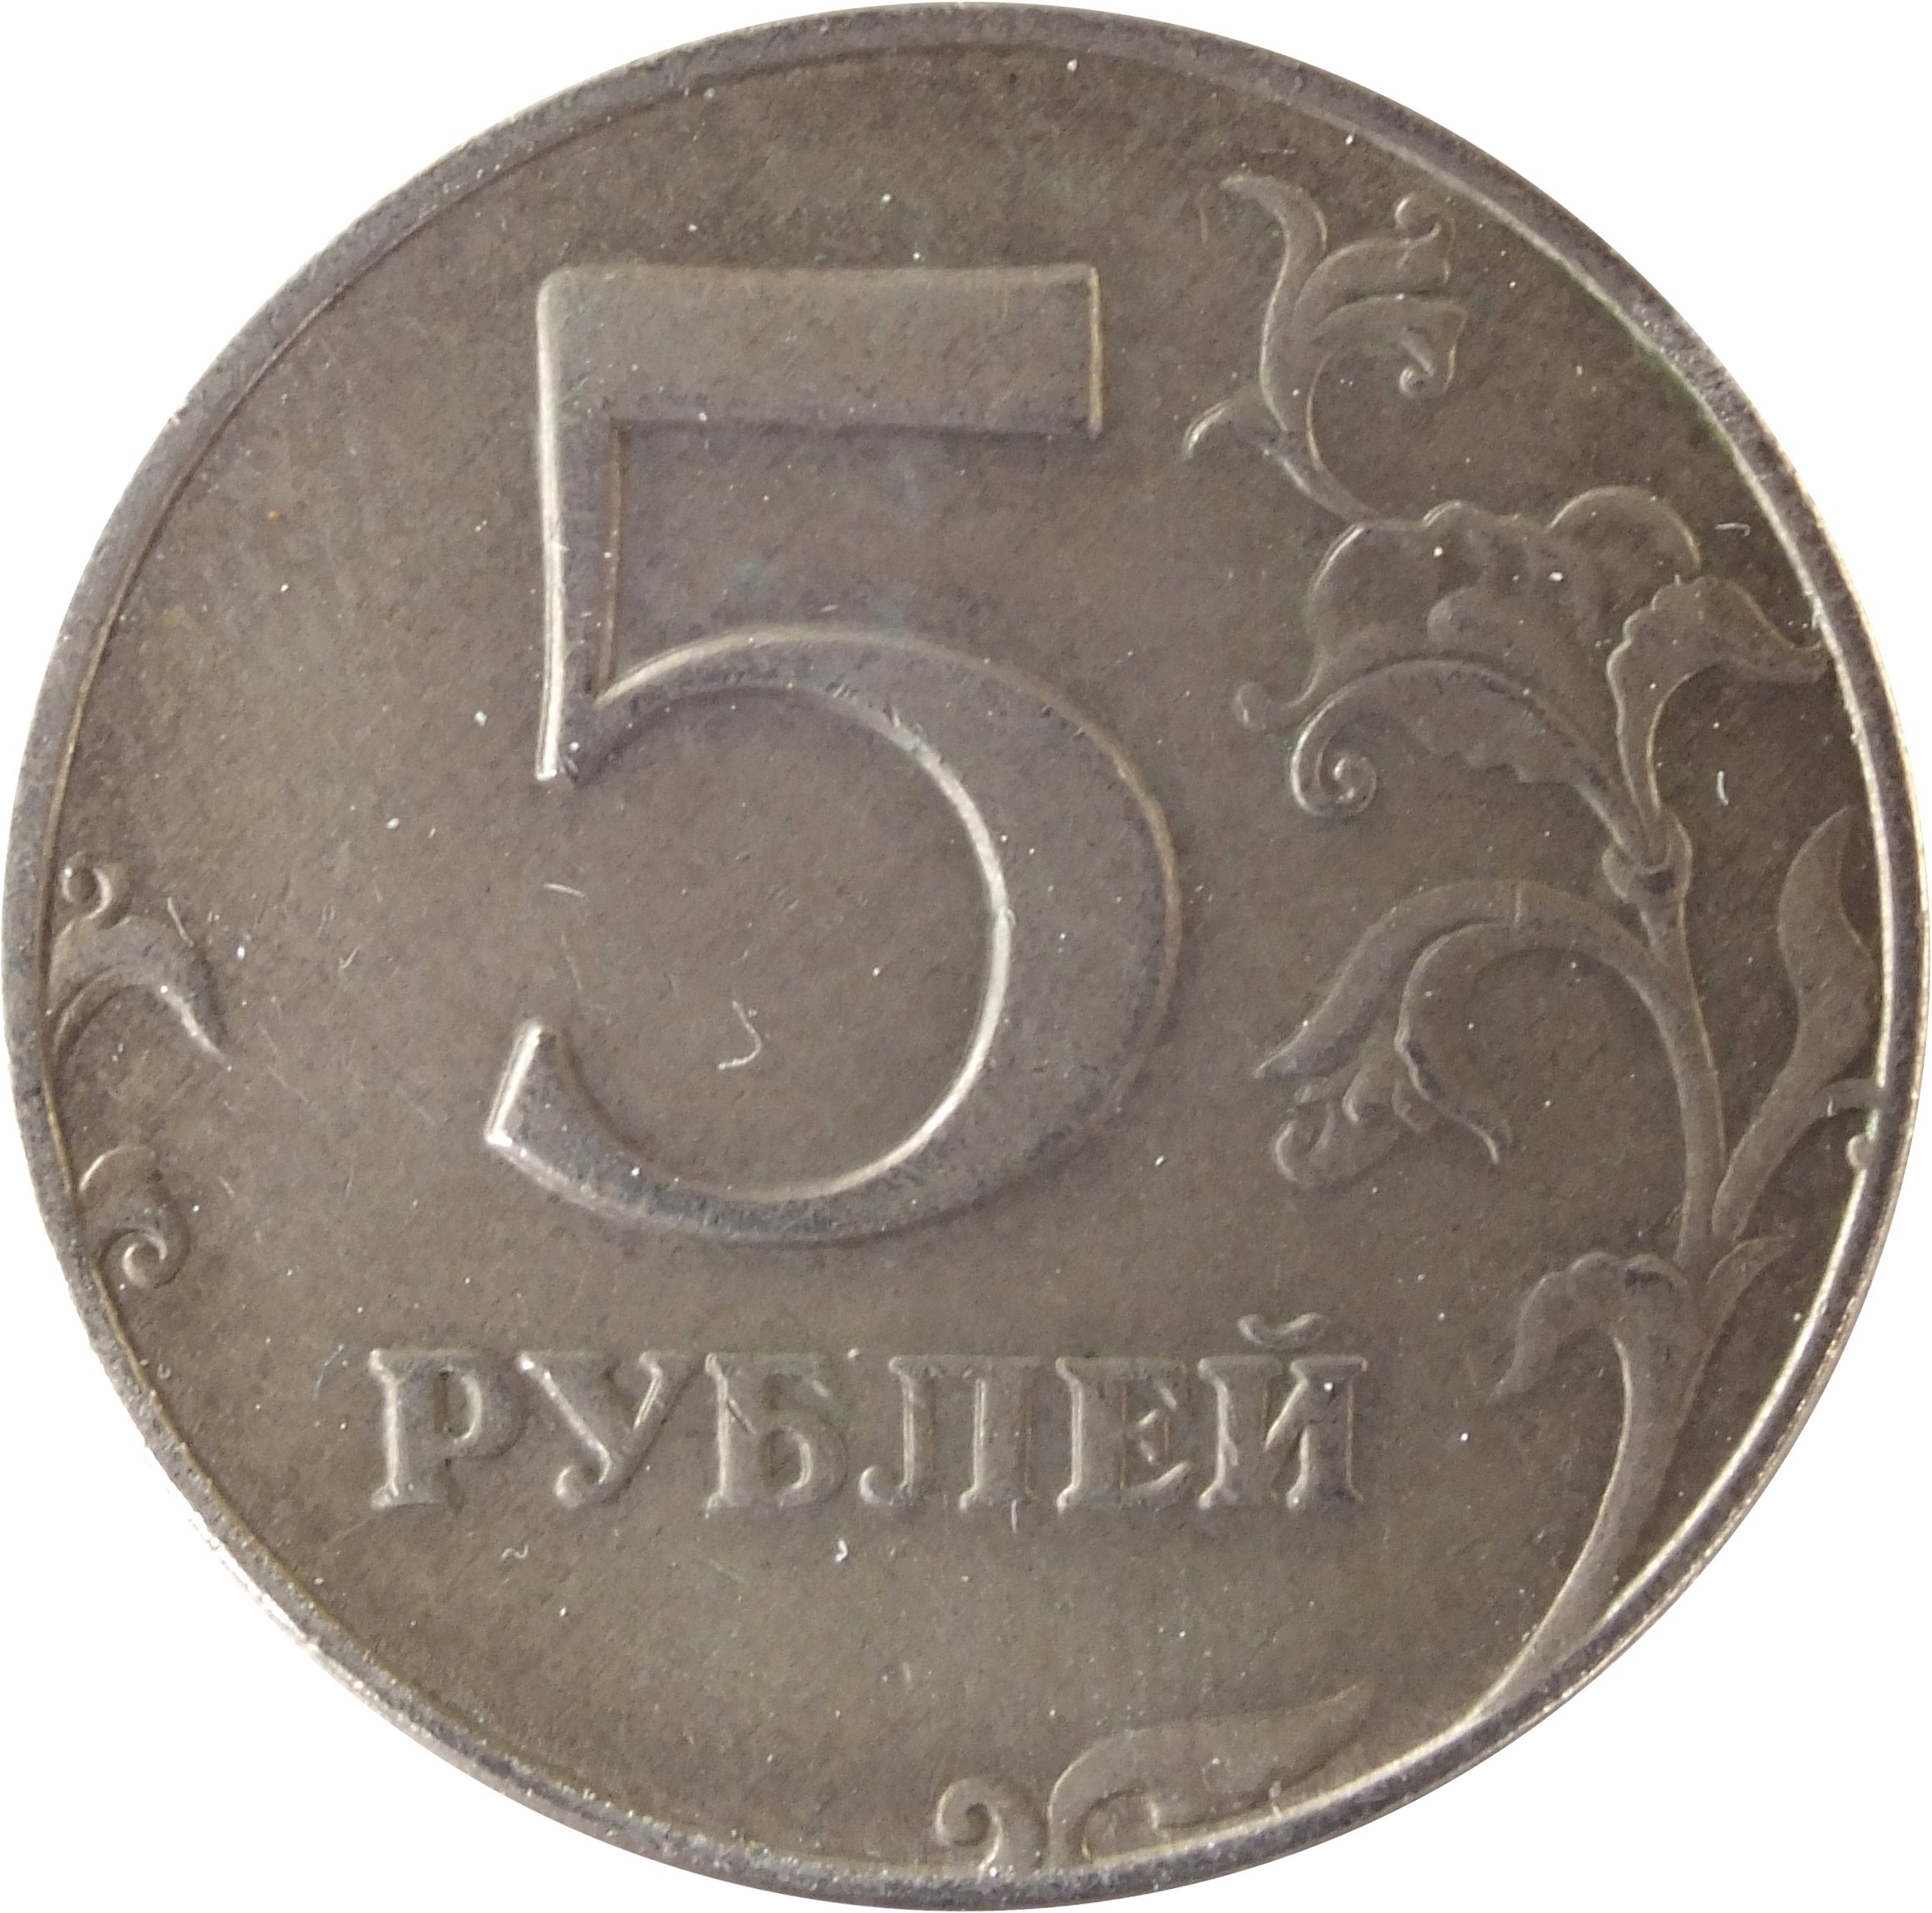 Количество монеты 5 рублей. Монета 5 рублей. Монета 5 рублей реверс. Монета "5 рублей 1907 года". Монета 5 рублей без фона.